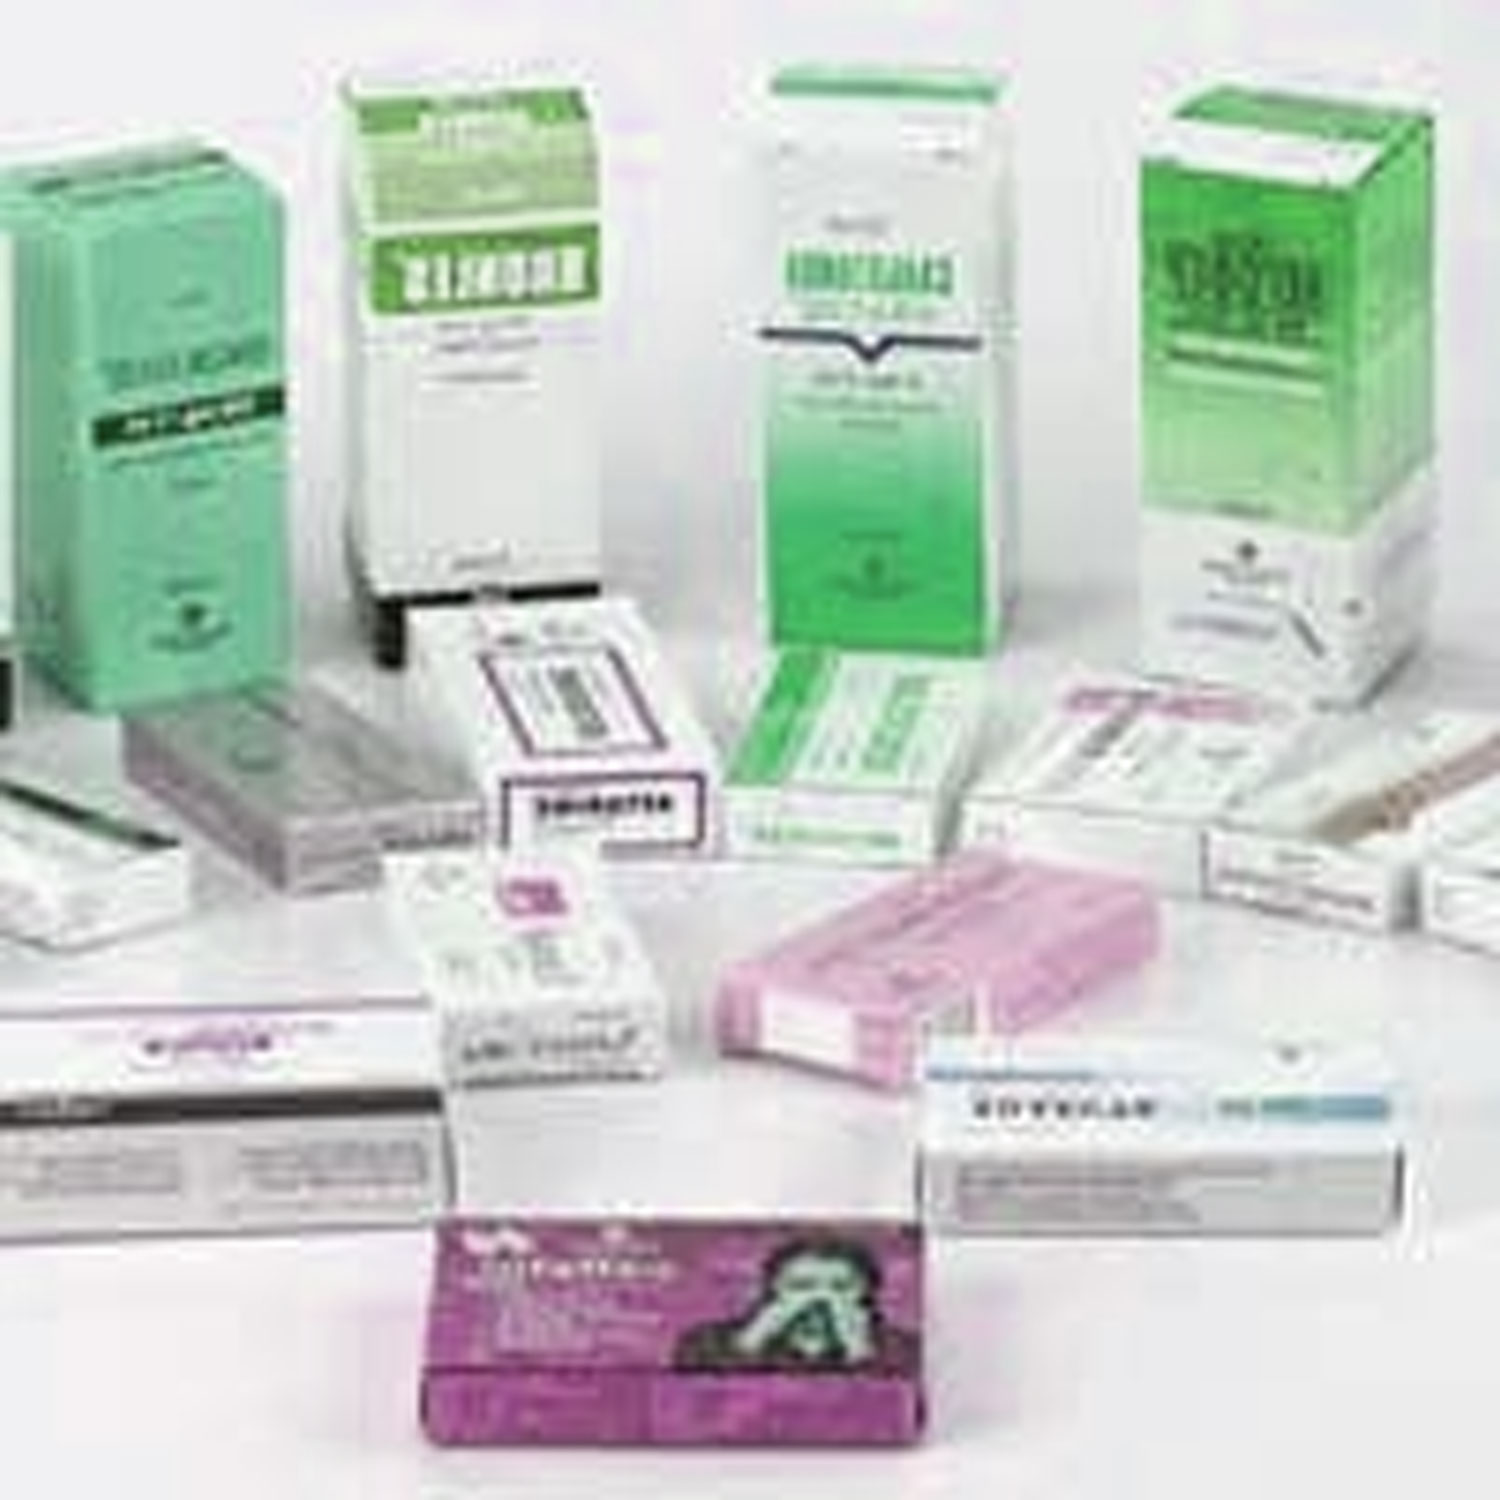 Pharmaceutical Boxes"